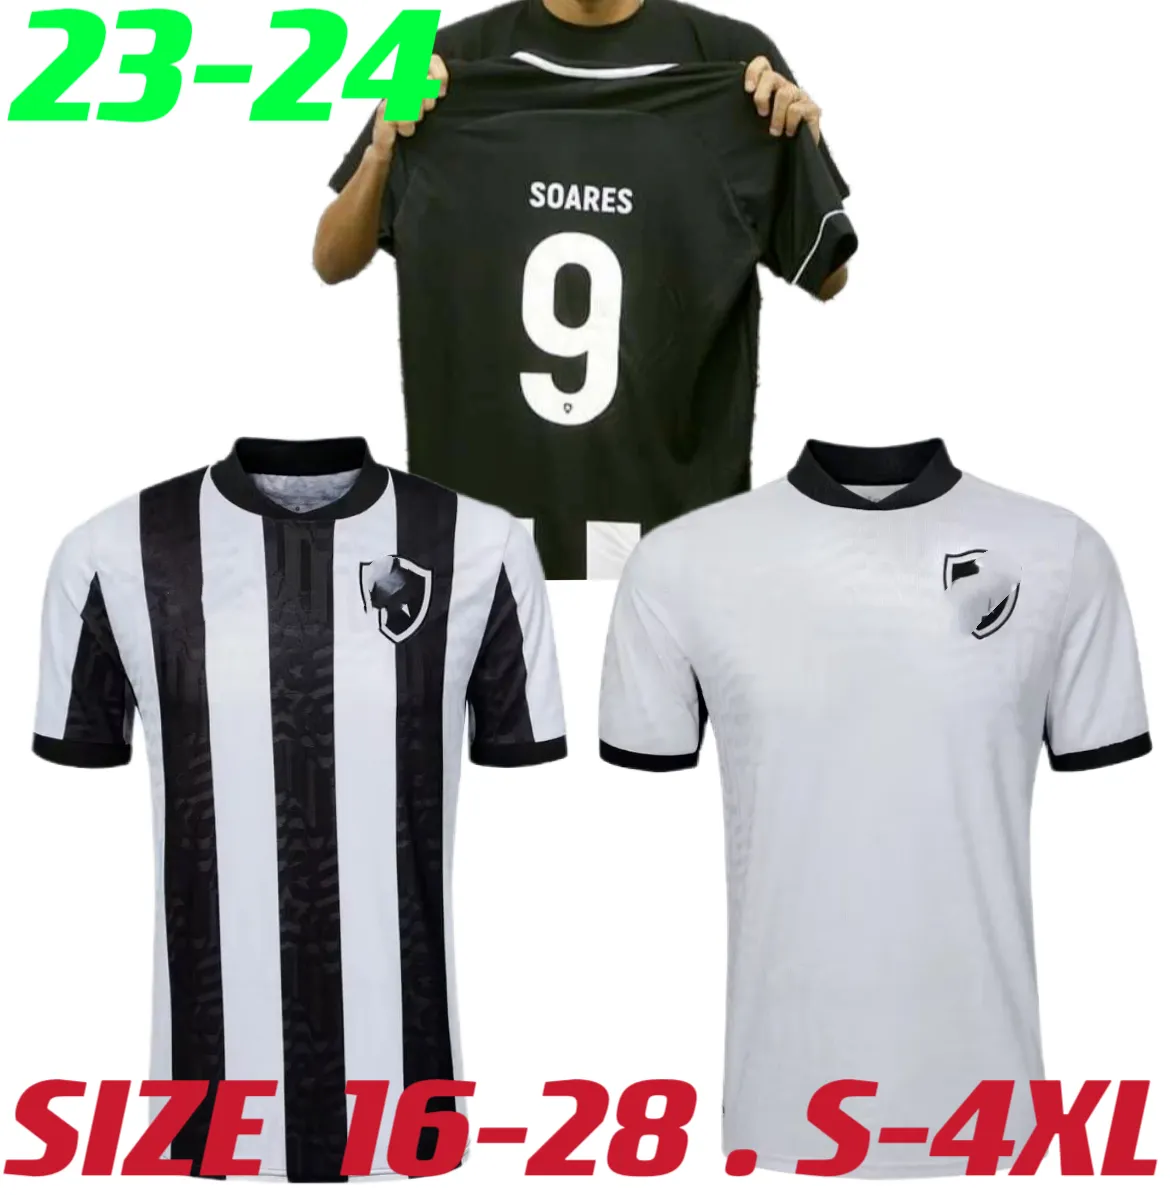 2023 2024 Botafogo Mens Soccer Jerseys 22 23 24 Soares Matheus Babi Bernardo O.Sauer Home Black and White 3rd Football Shirt Kort ärm Vuxen uniformer Storlek 16-28 S-4XL